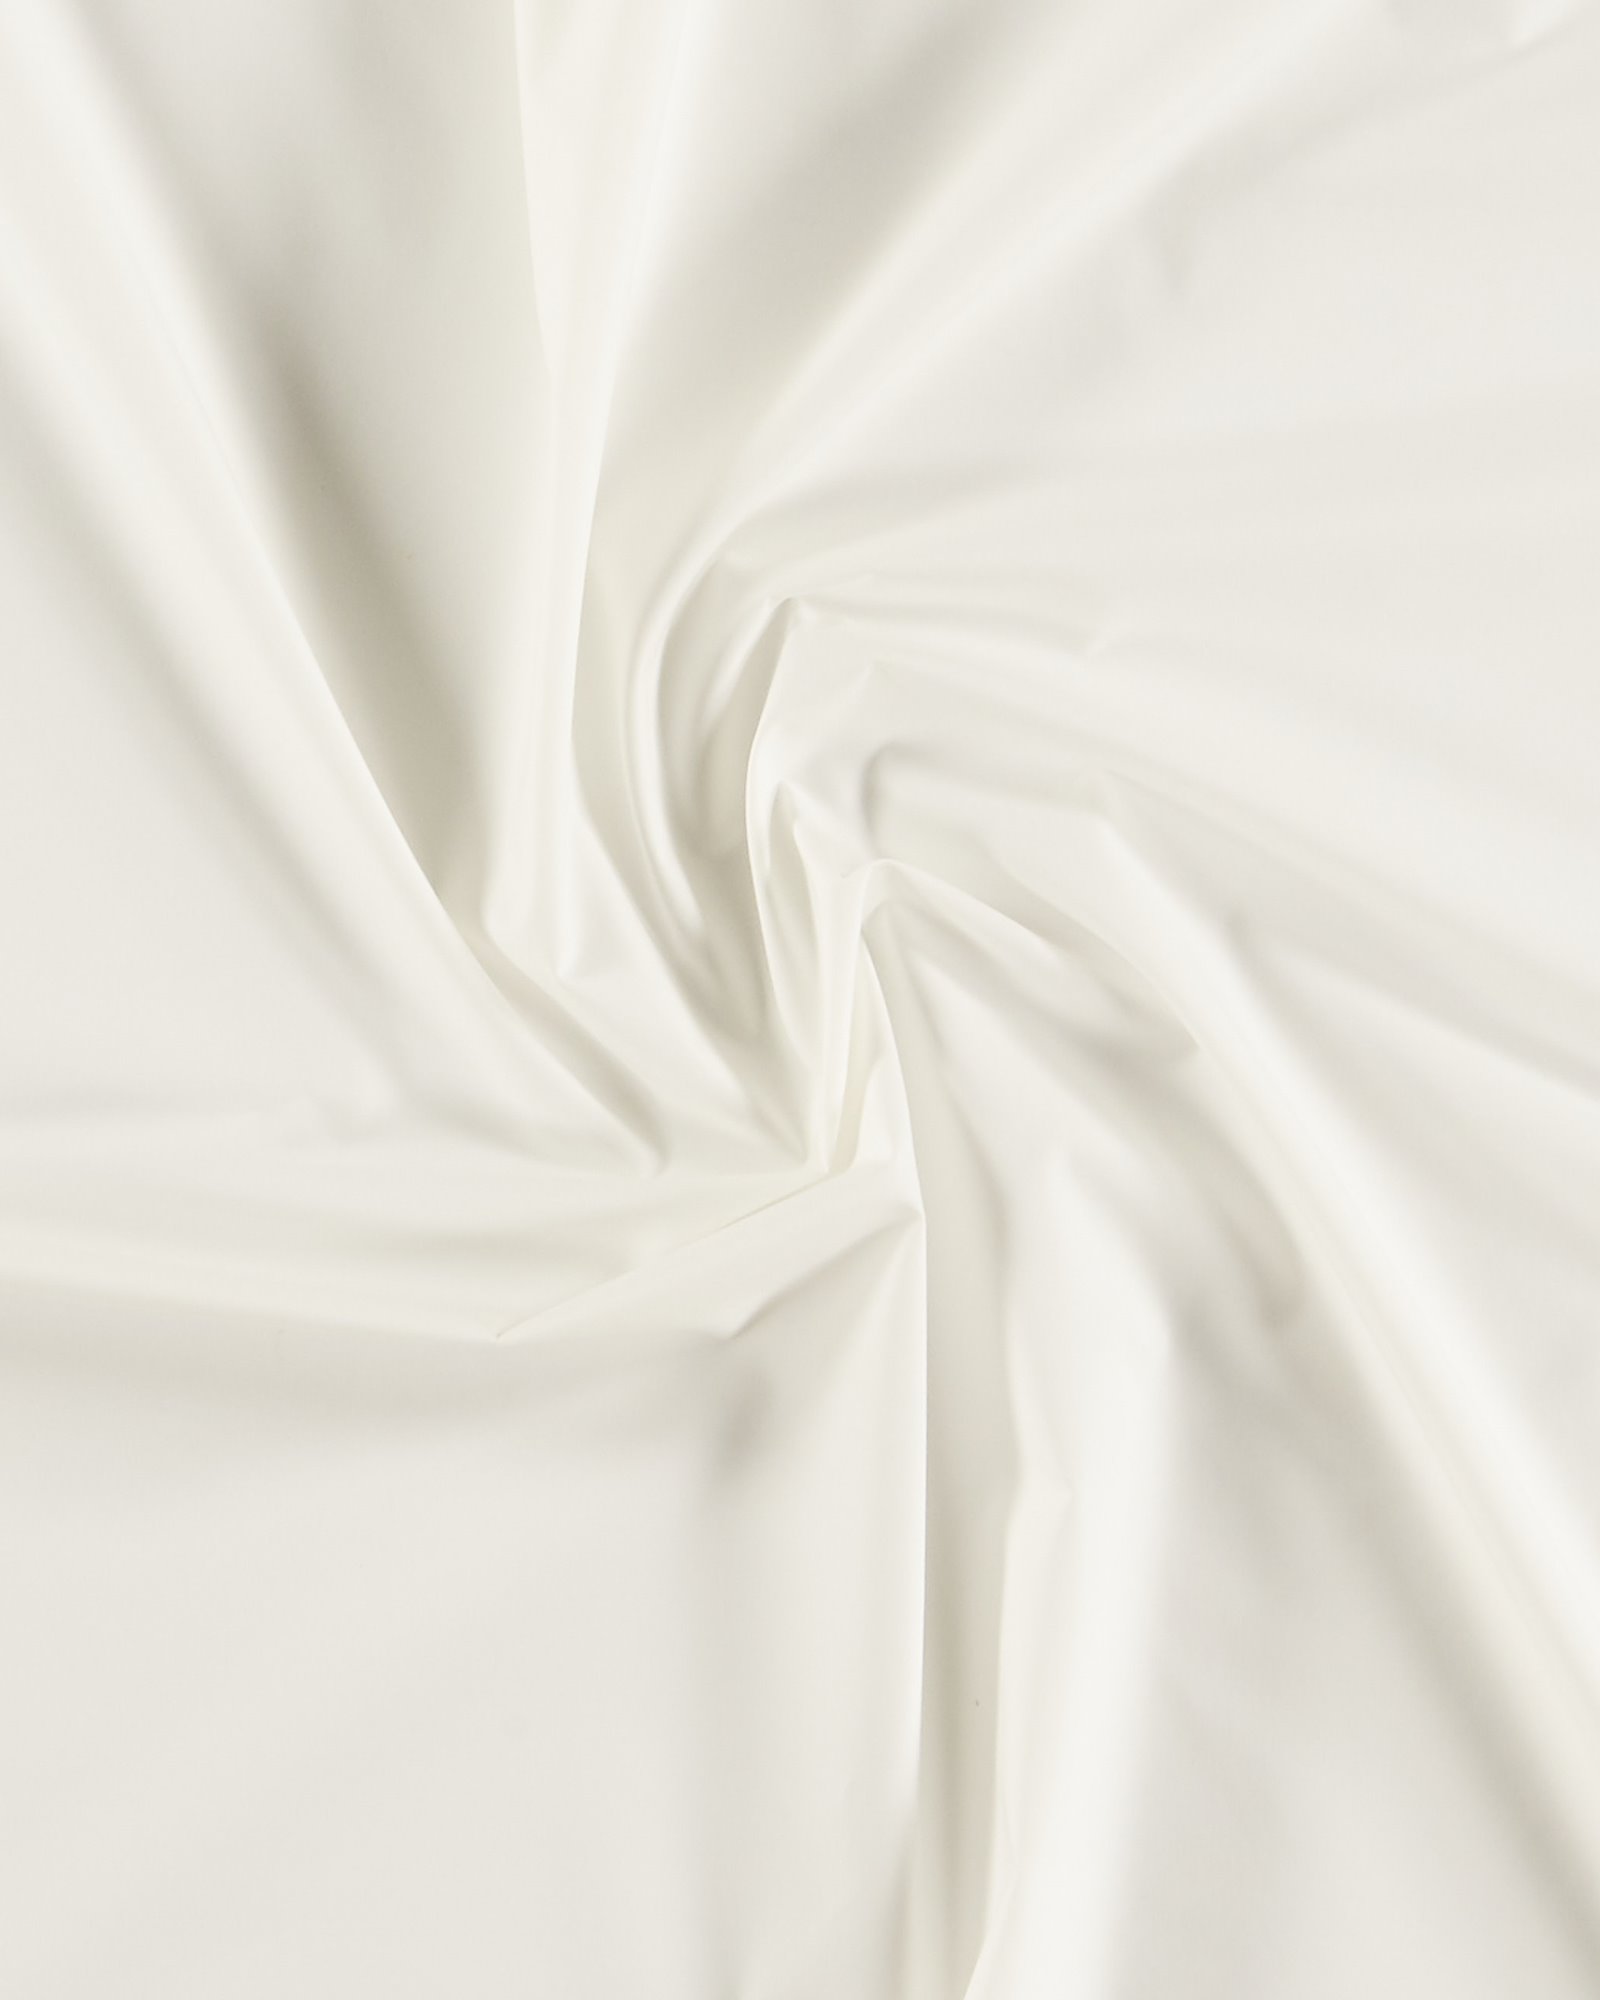 https://media.selfmade.com/images/cotton-poplin-off-white-540134-pack.jpg?width=1600&height=2000&i=89223&ud=amxigrkk2wg